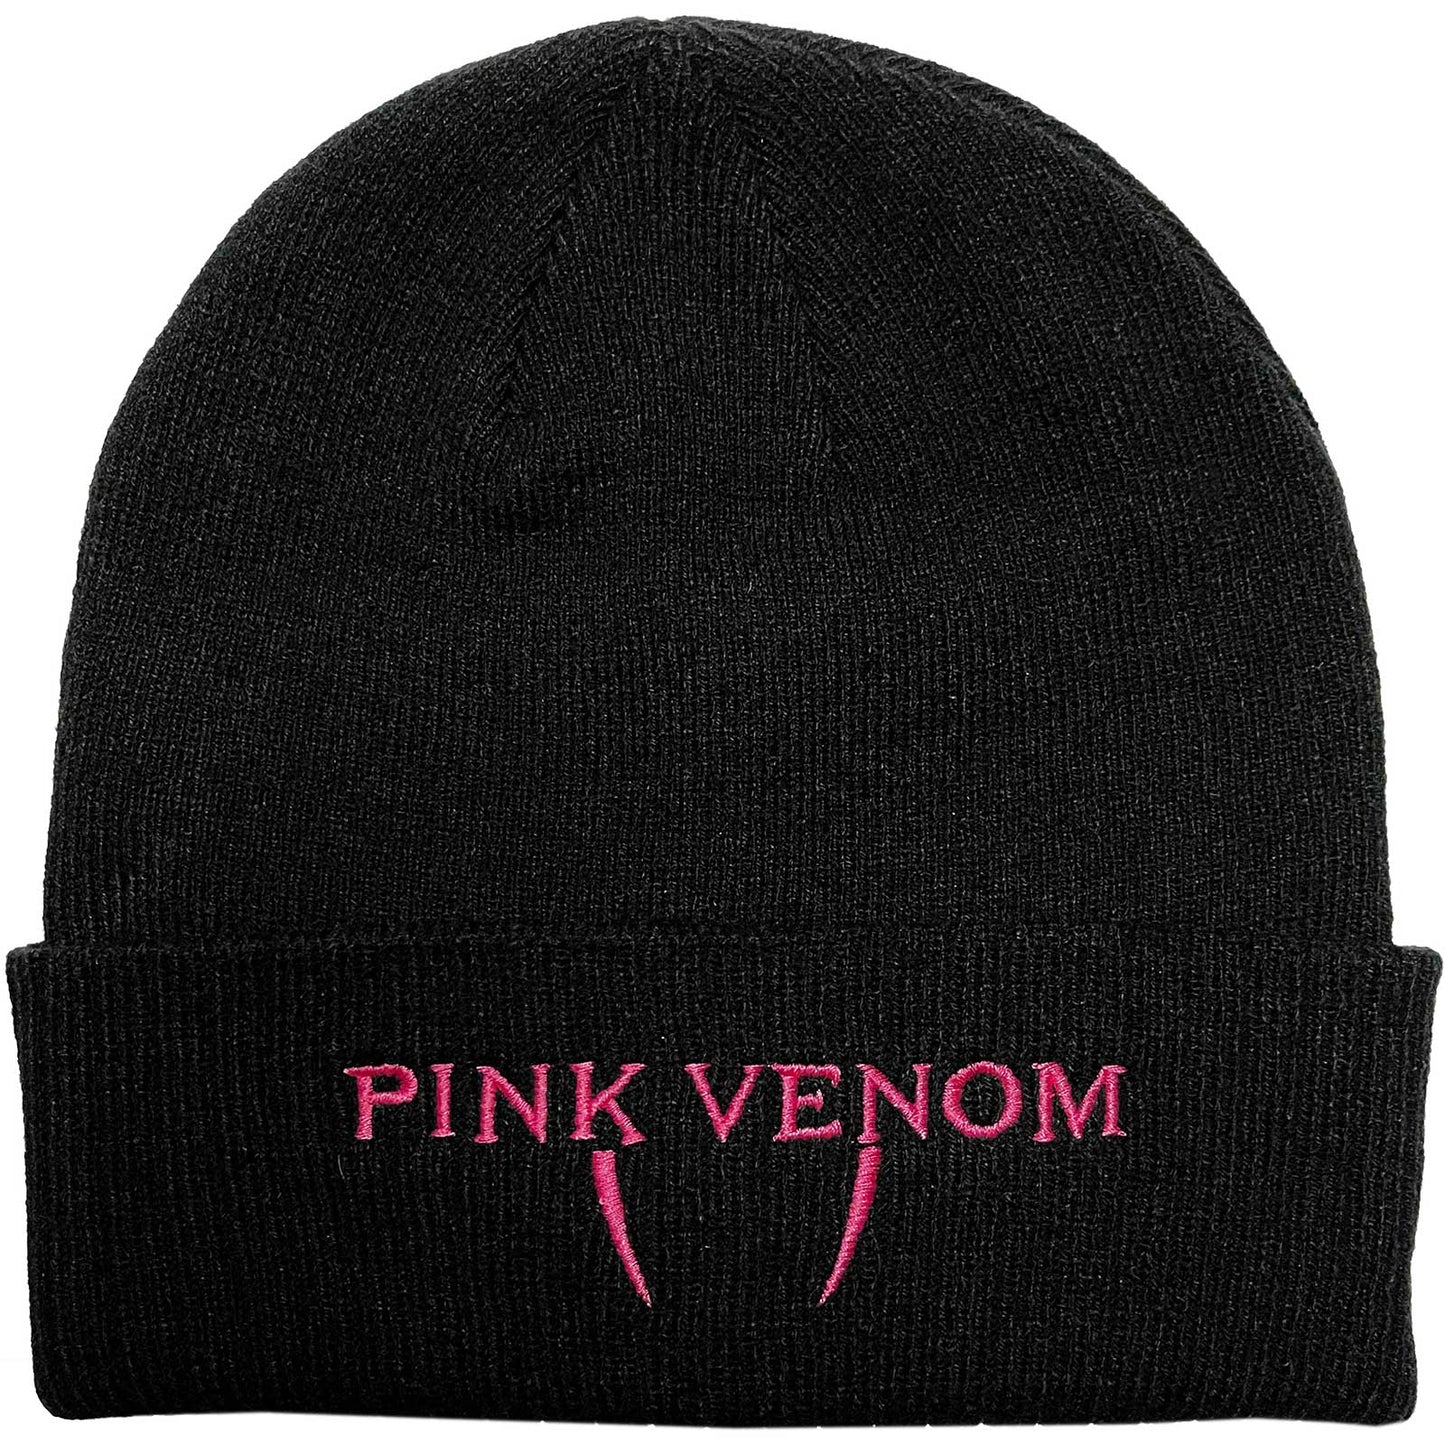 BlackPink Beanie Hat Pink Venom - Ireland Vinyl